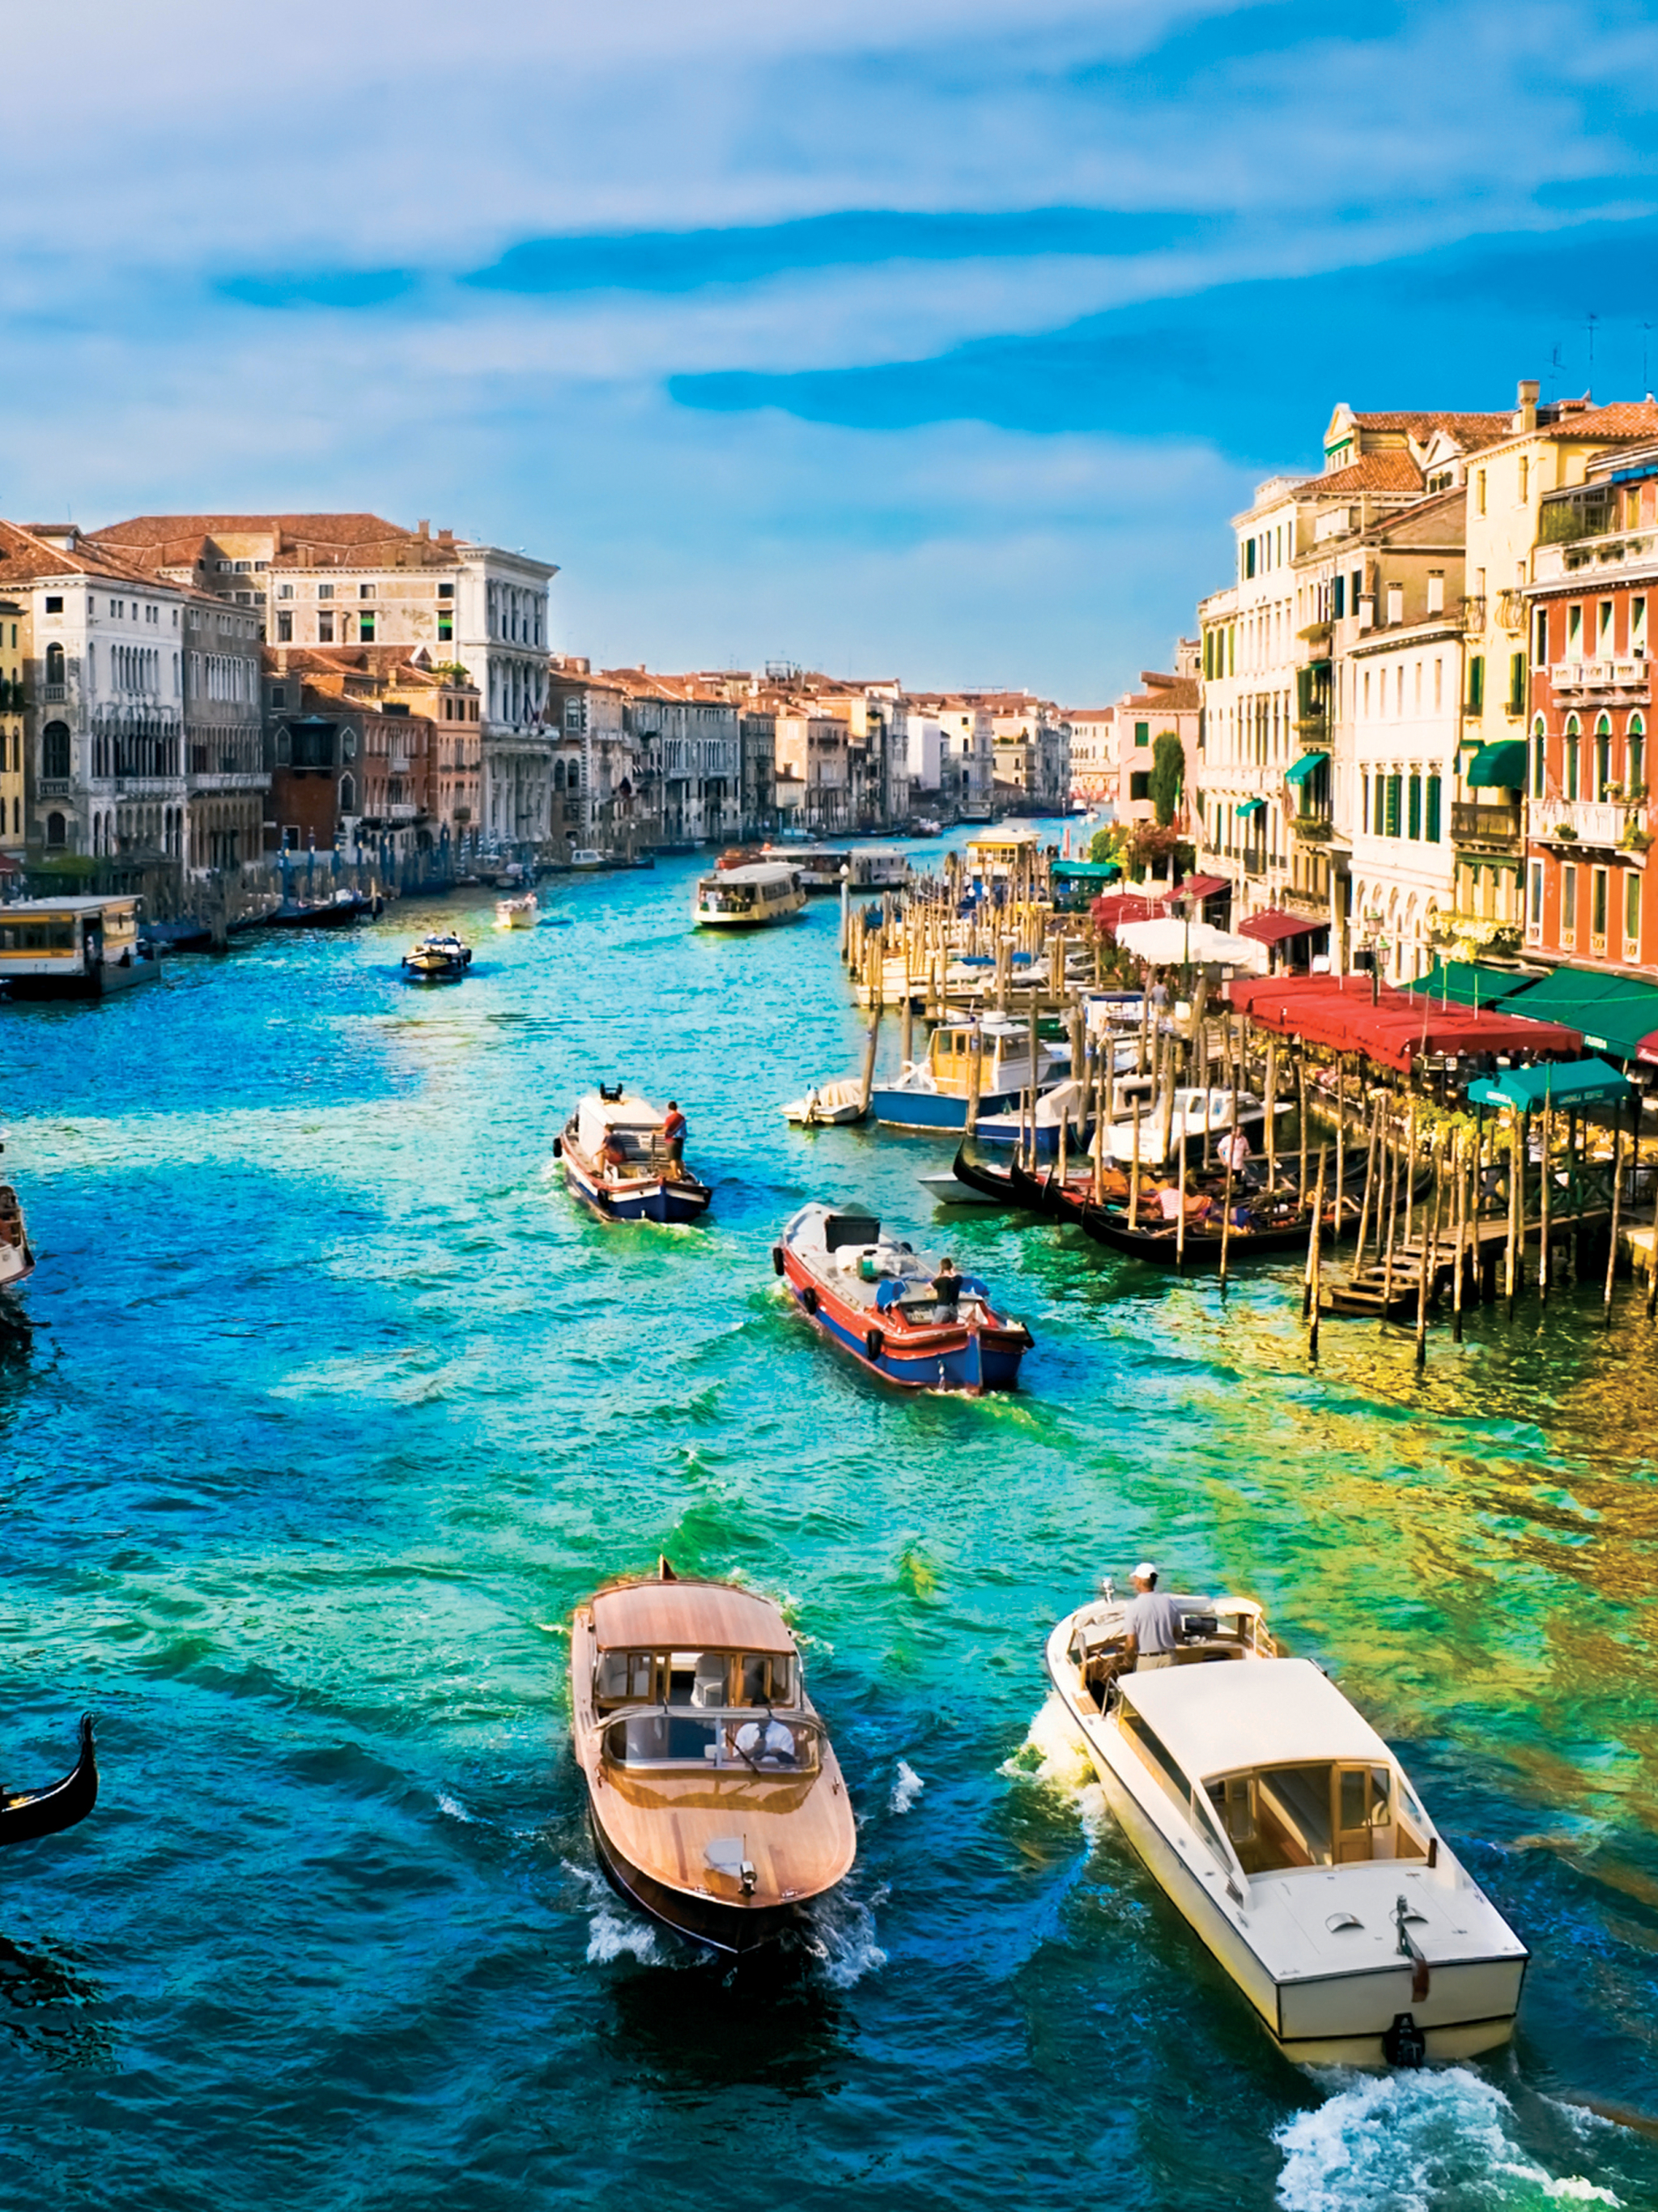 Скачать обои бесплатно Города, Италия, Венеция, Лодка, Канал, Сделано Человеком, Большой Канал картинка на рабочий стол ПК